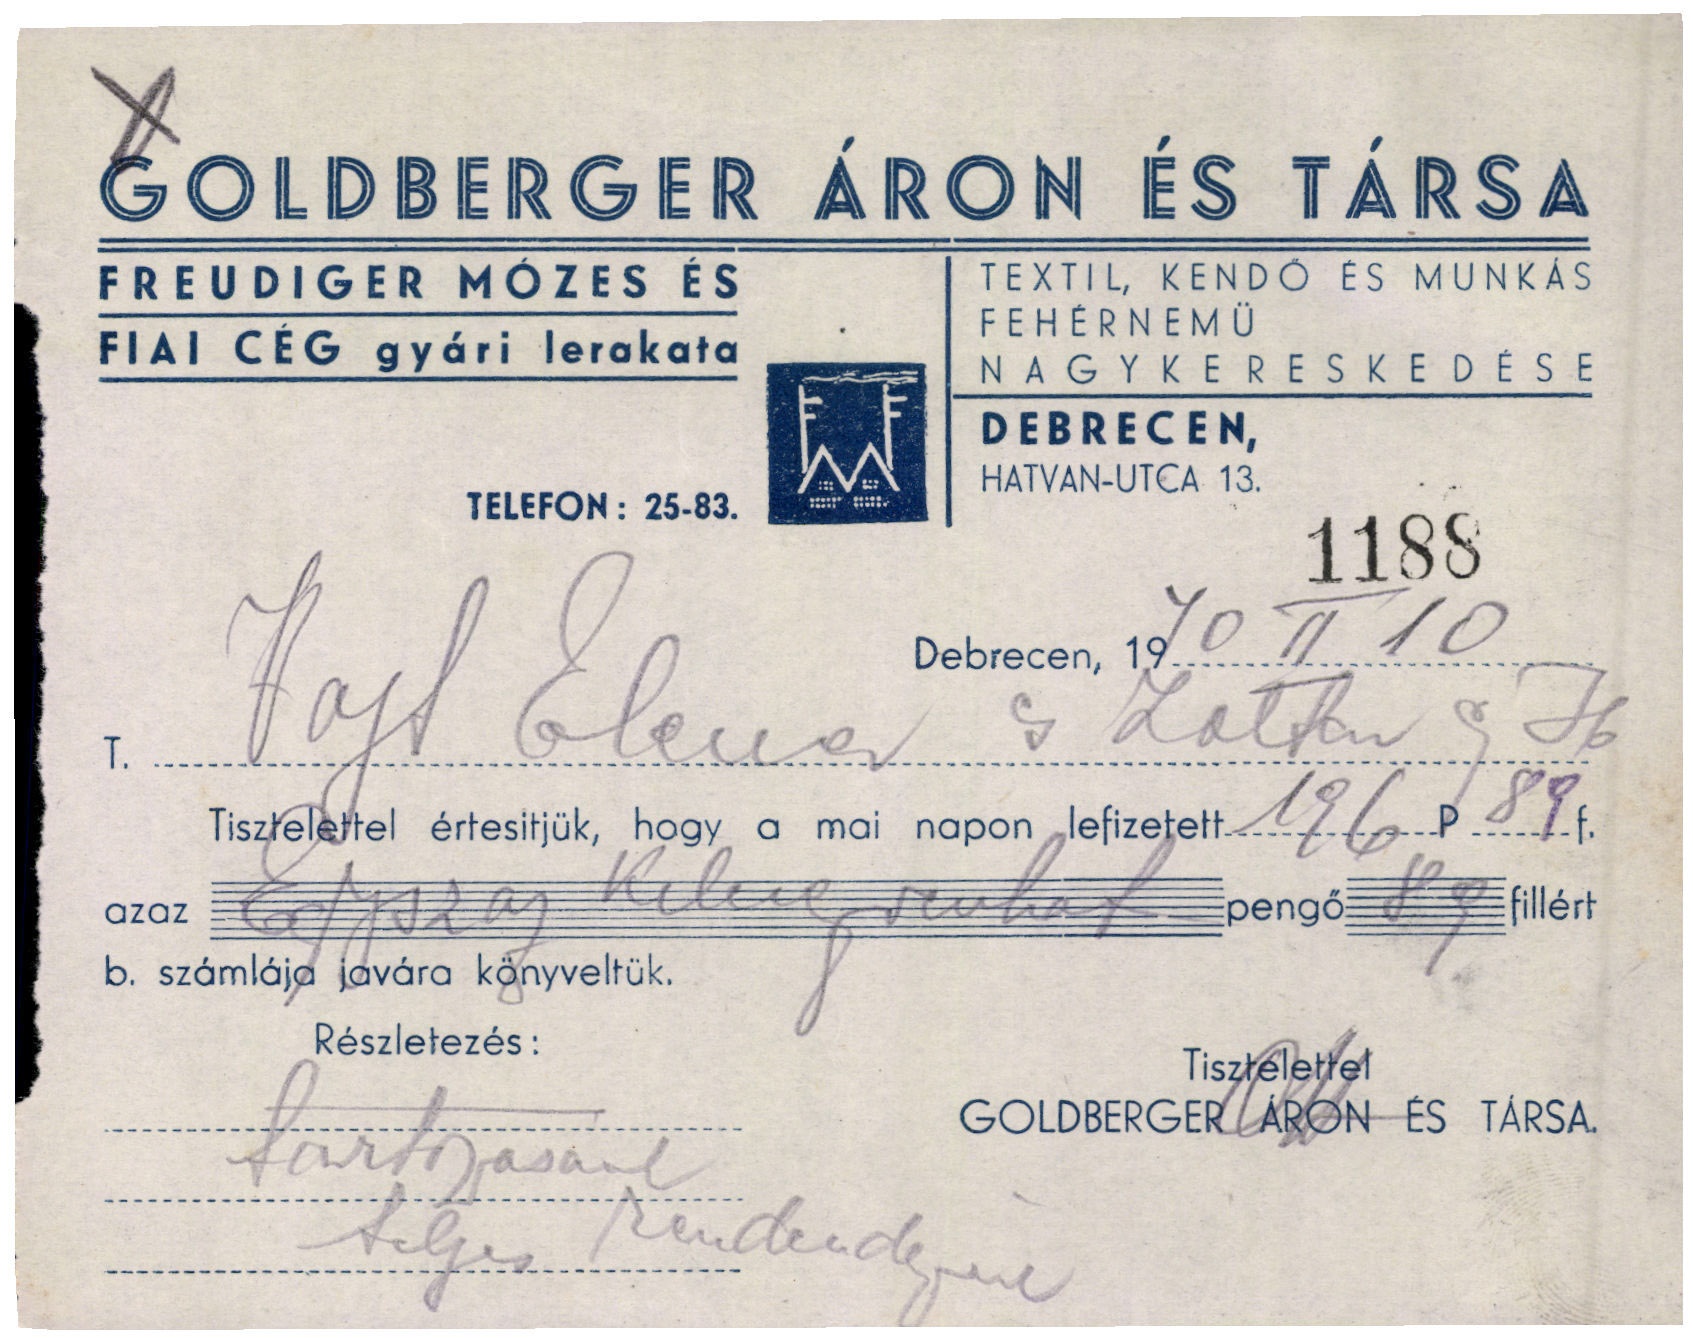 Goldberger Áron és Társa textil, kendő és munkás fehérnemű nagykereskedése (Magyar Kereskedelmi és Vendéglátóipari Múzeum CC BY-NC-SA)